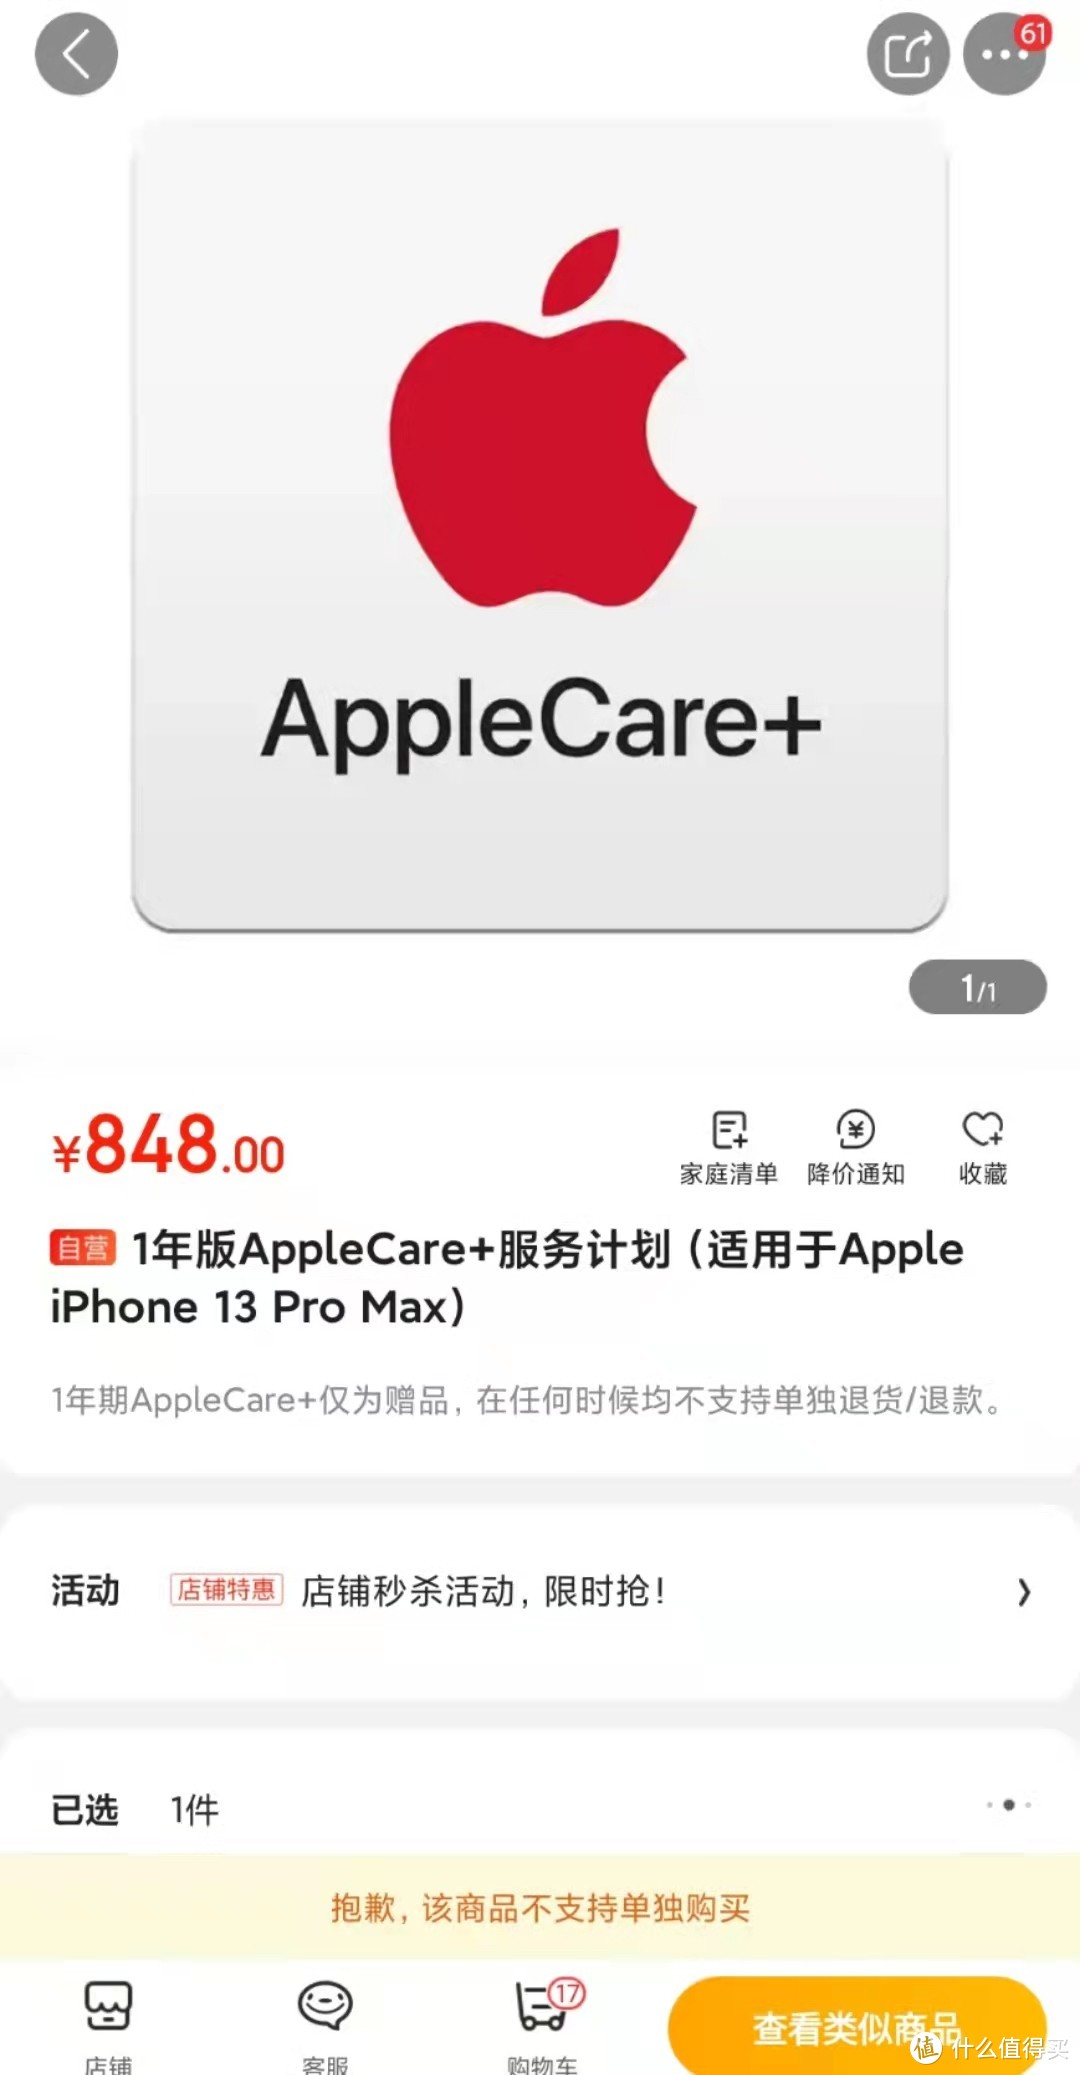 连中两元，经验分享，手把手教你在京东抢购iPhone 13 pro/Max